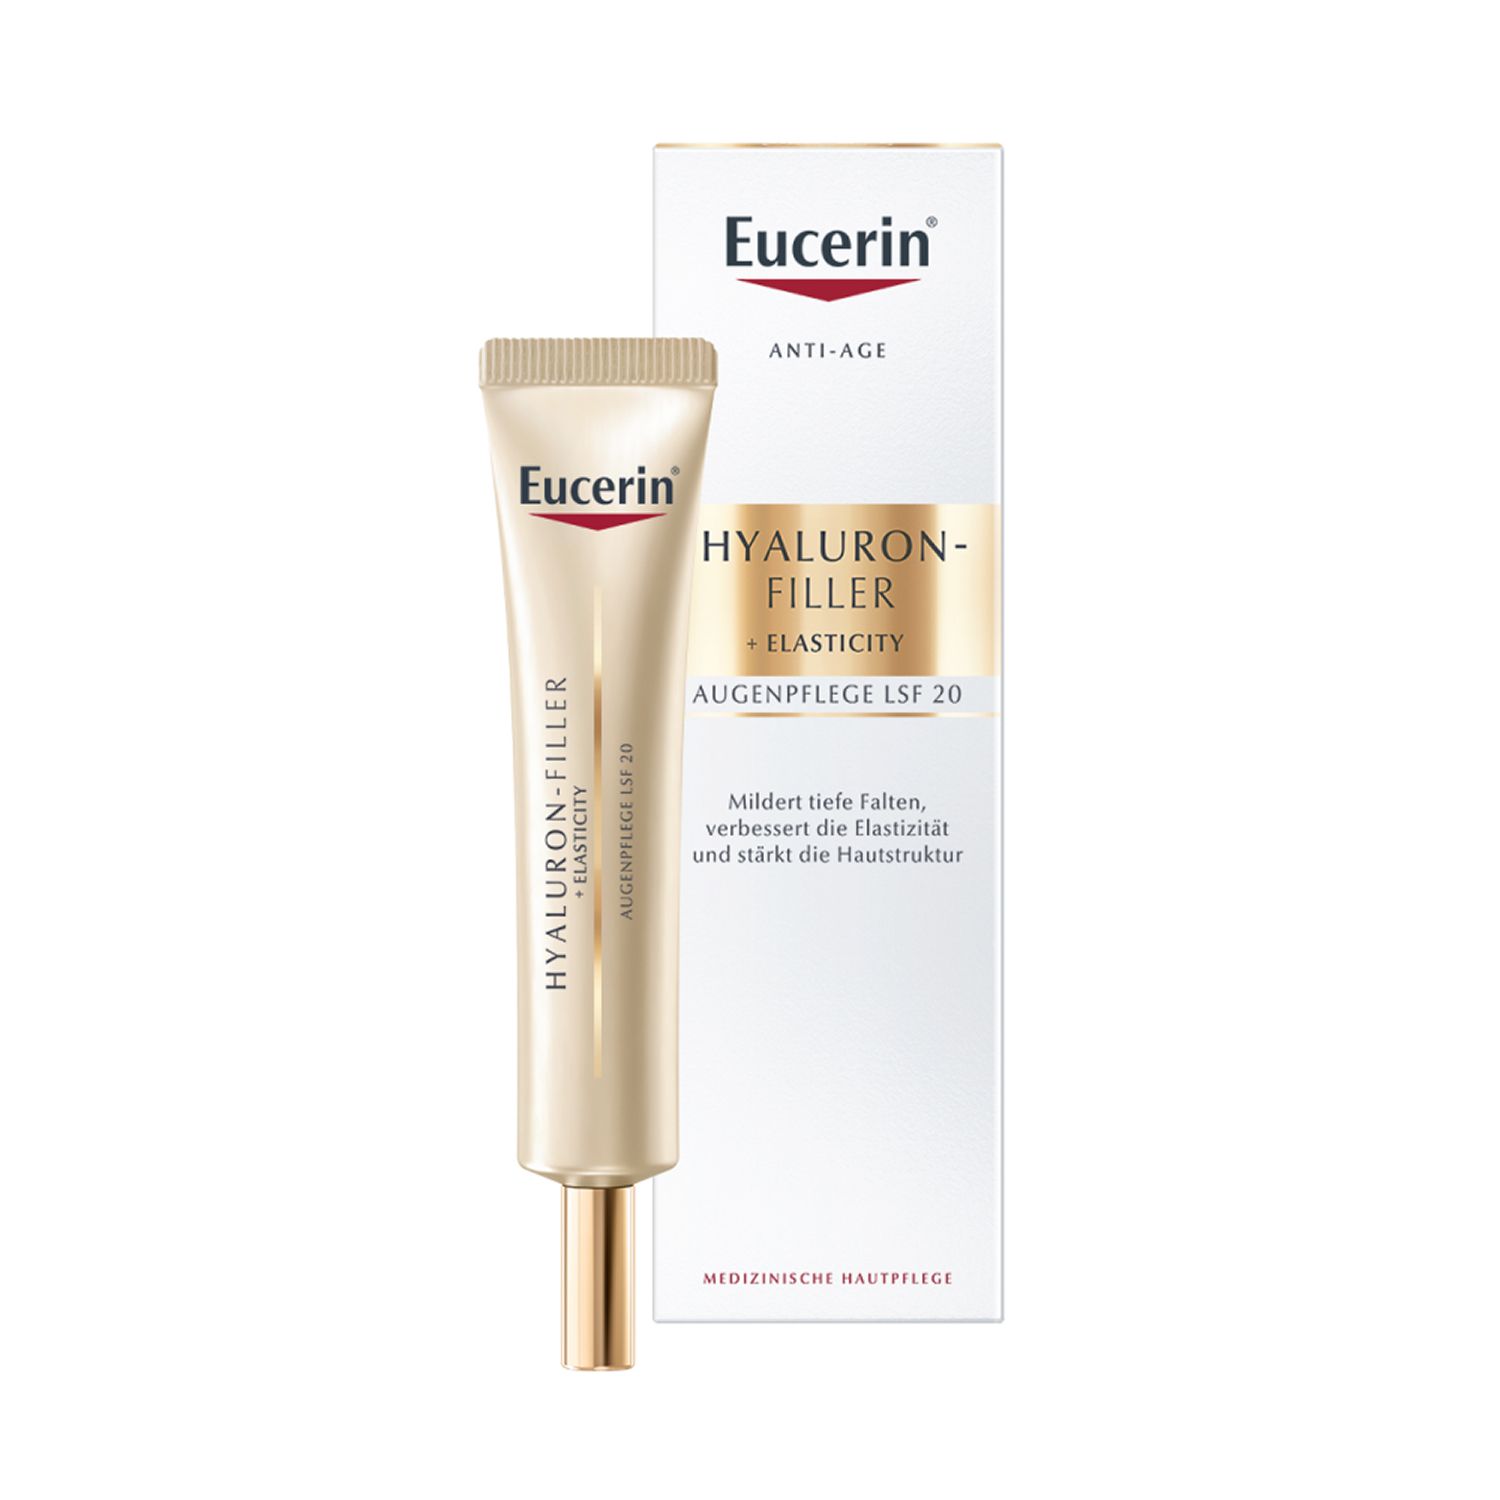 Eucerin® Hyaluron-Filler + Elasticity Augenpflege + Eucerin Hyaluron-Filler Intensiv-Maske GRATIS